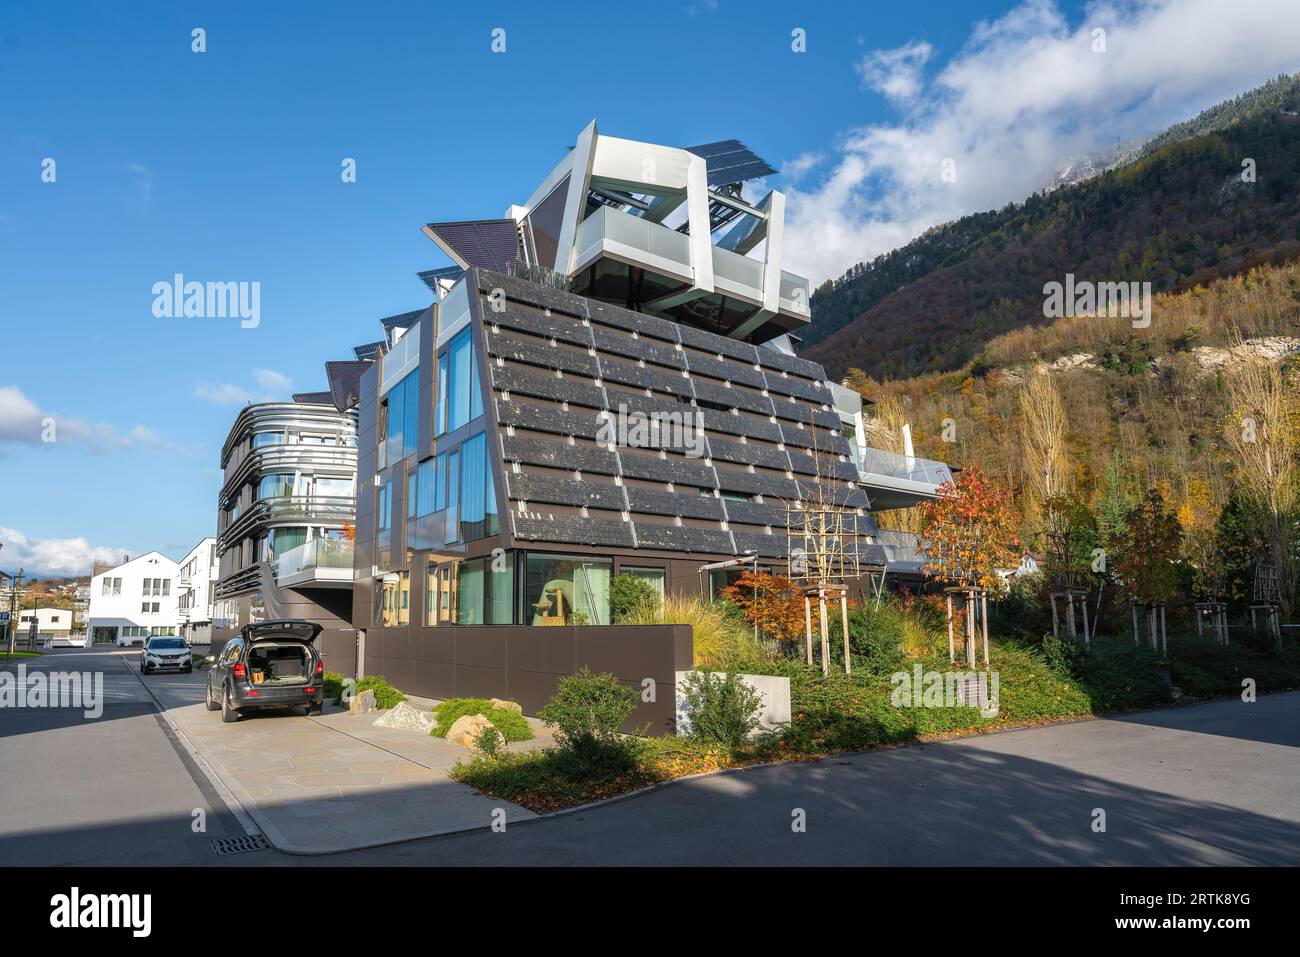 Bâtiment à énergie active - Architecture durable - Vaduz, Liechtenstein Banque D'Images